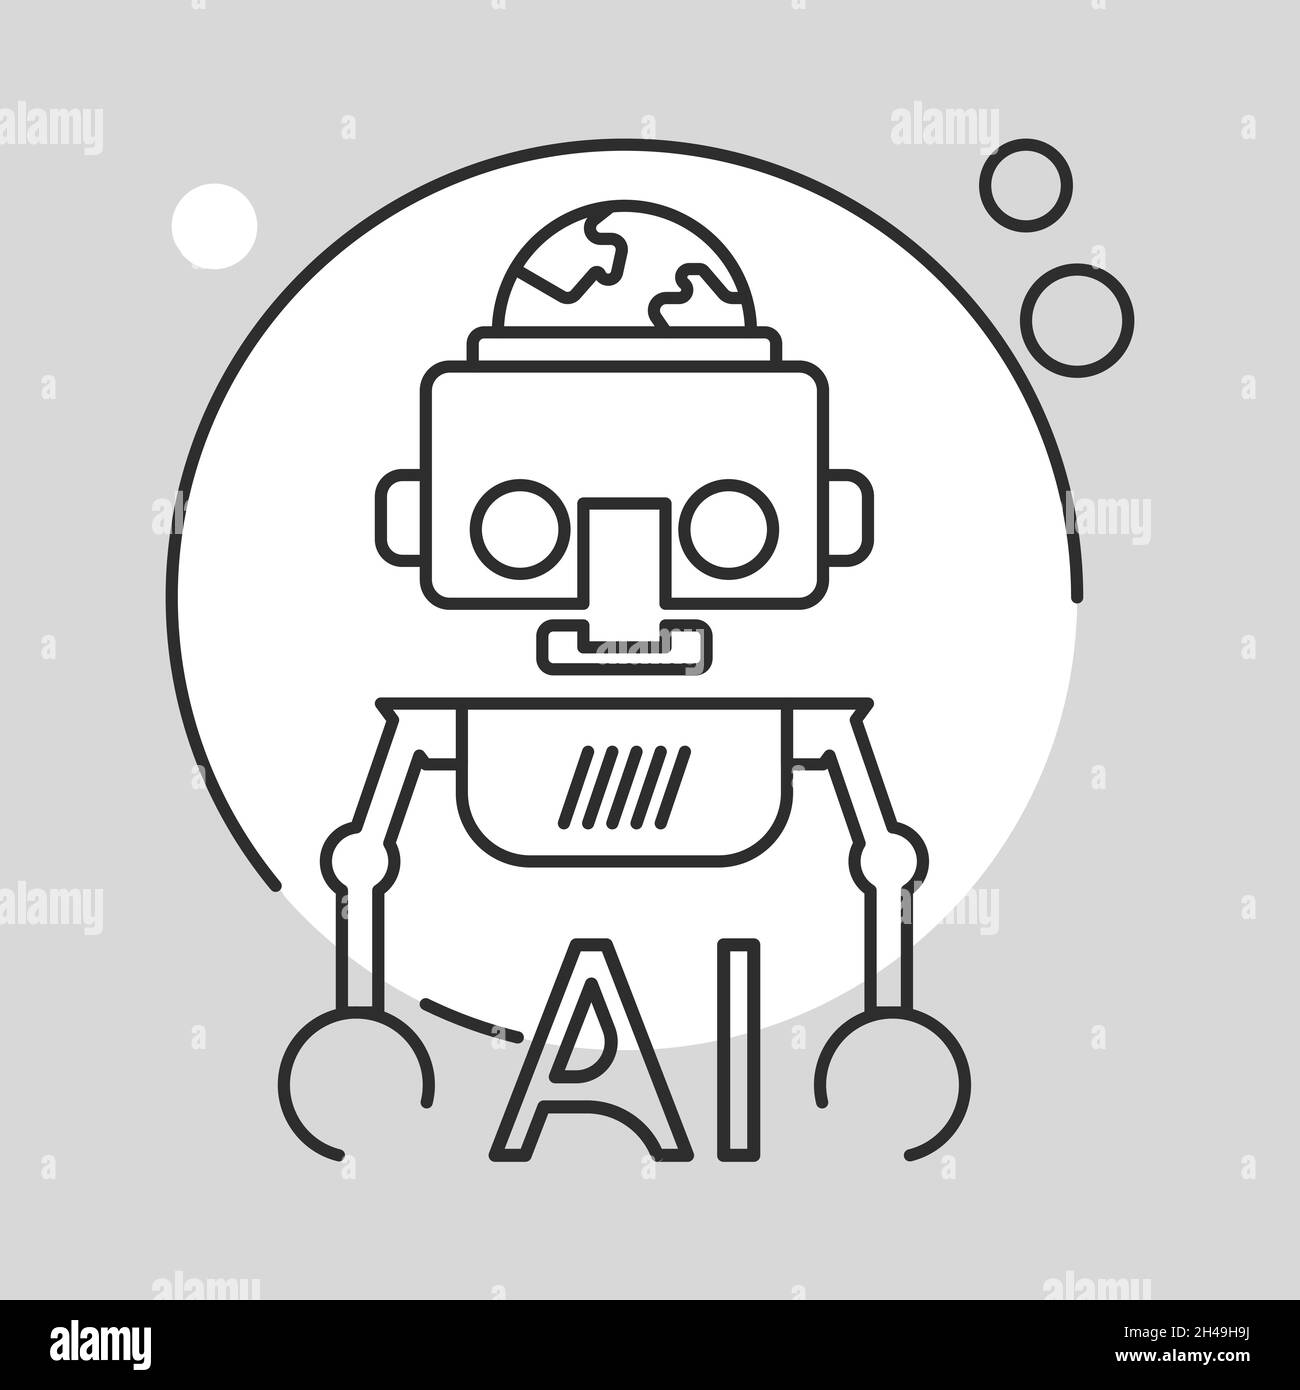 Robotersymbol. Singularitätskonzept für künstliche Intelligenz. Flache Illustration. Stock Vektor